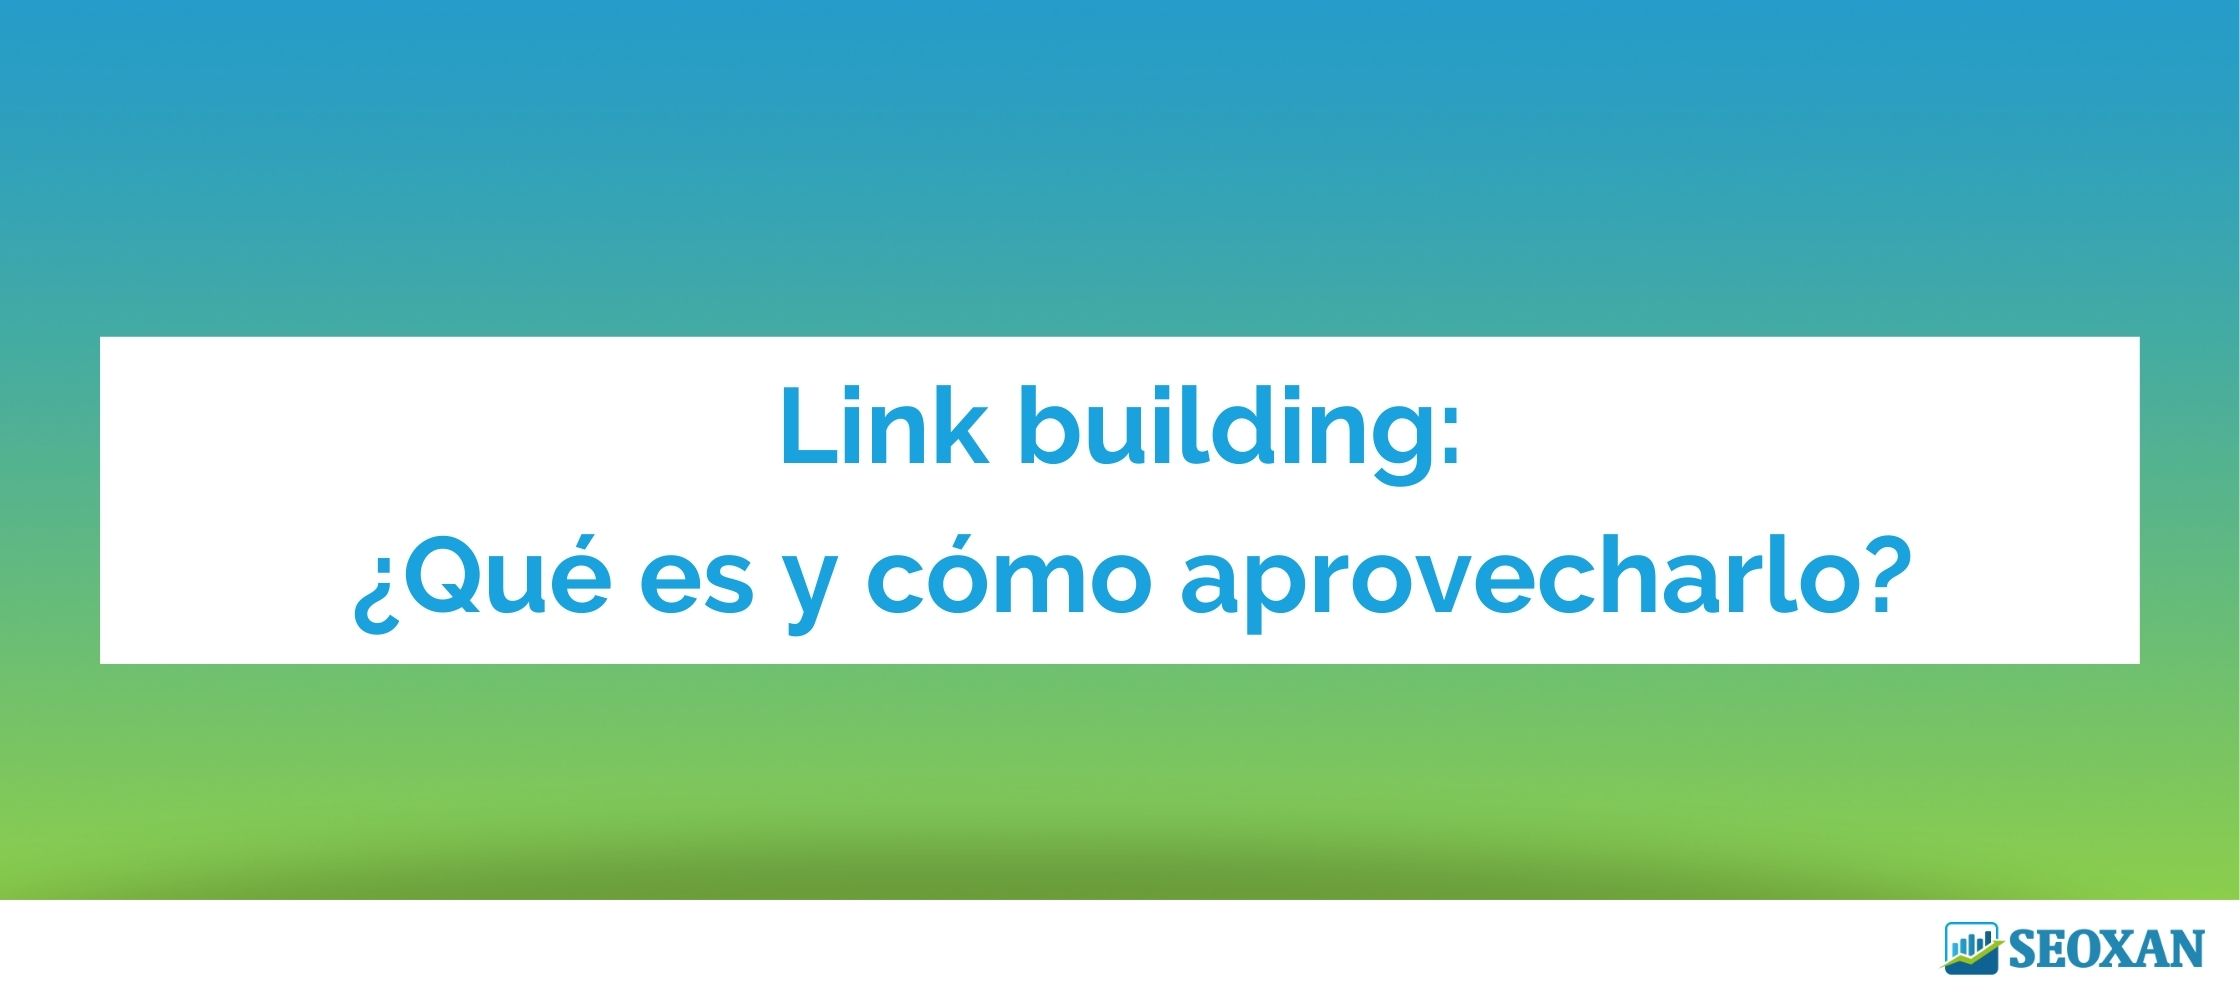 Link building: ¿Qué es y cómo aprovecharlo?